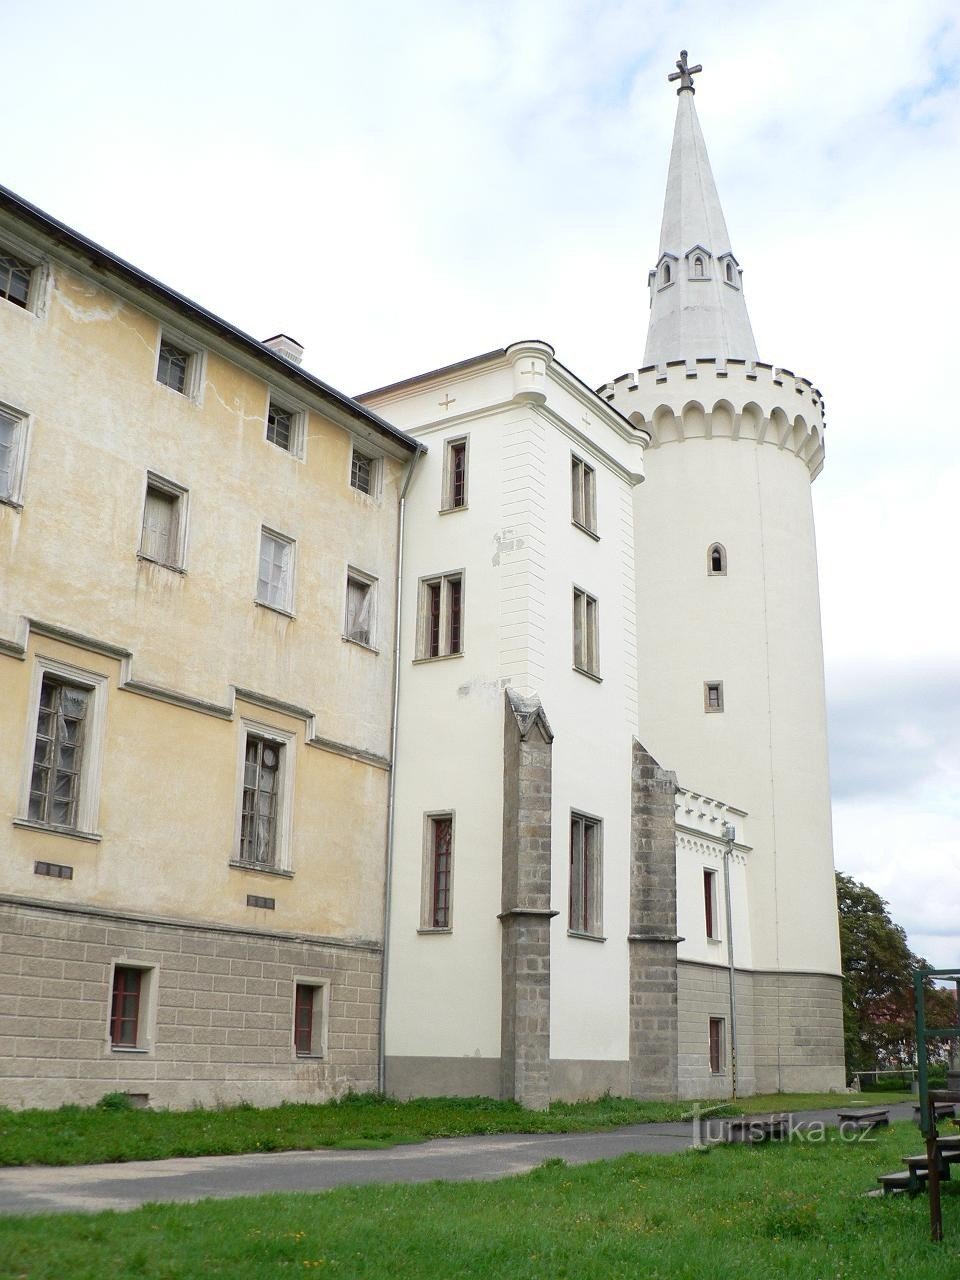 Château de Bor, tour